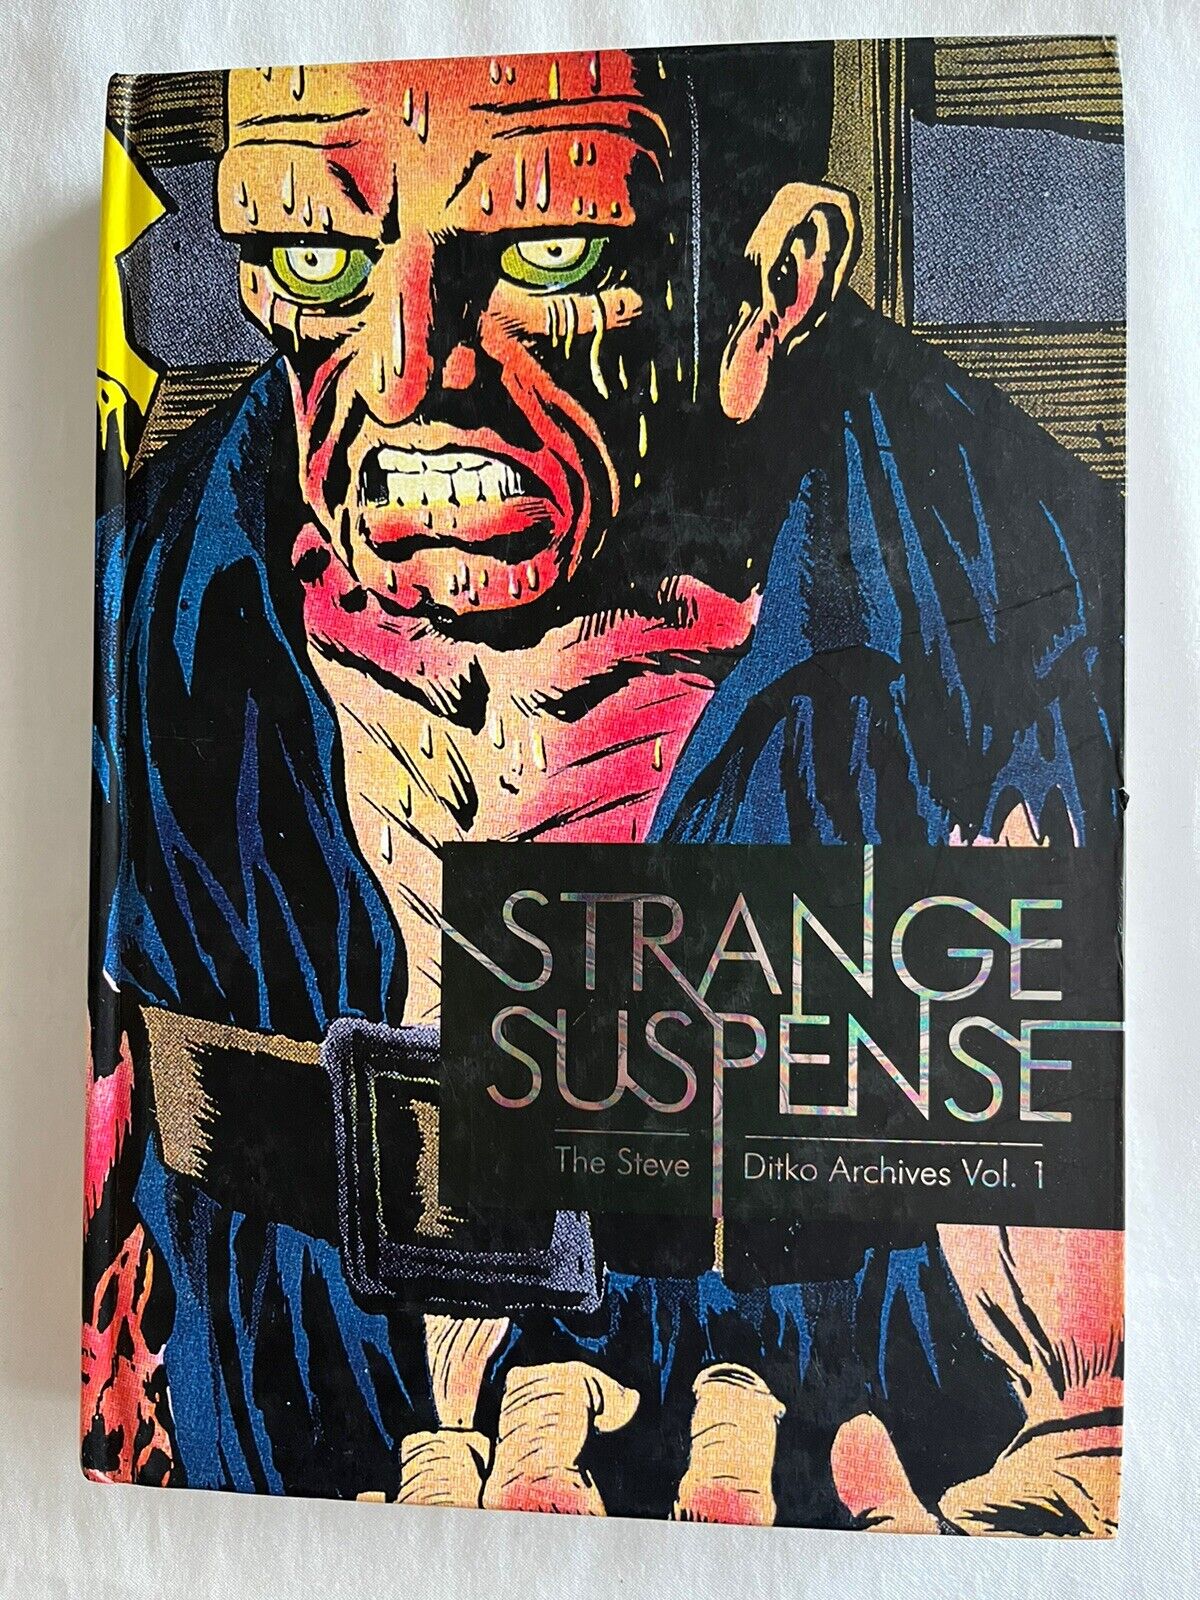 STEVE DITKO ARCHIVES VOL 1 Strange Suspense HoRRoR Comic Books HC